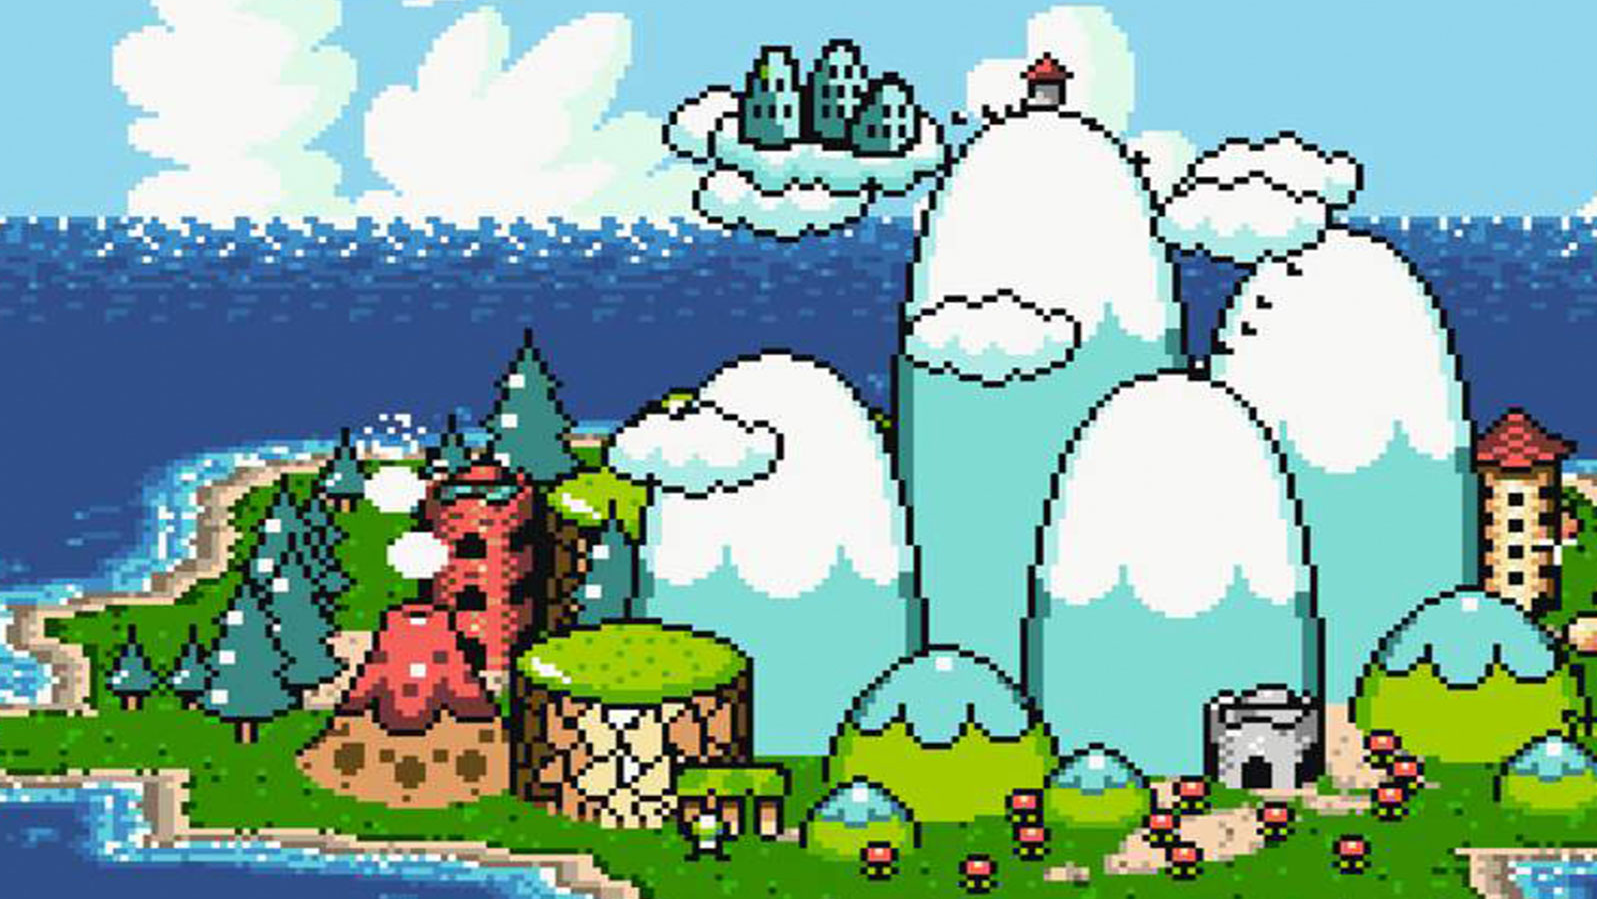 Mario islands 2. Марио Йоши ворлд 2 остров. Марио Исланд. Super Mario World 2 - Yoshi's Island Snes. Super Mario Yoshi Island.